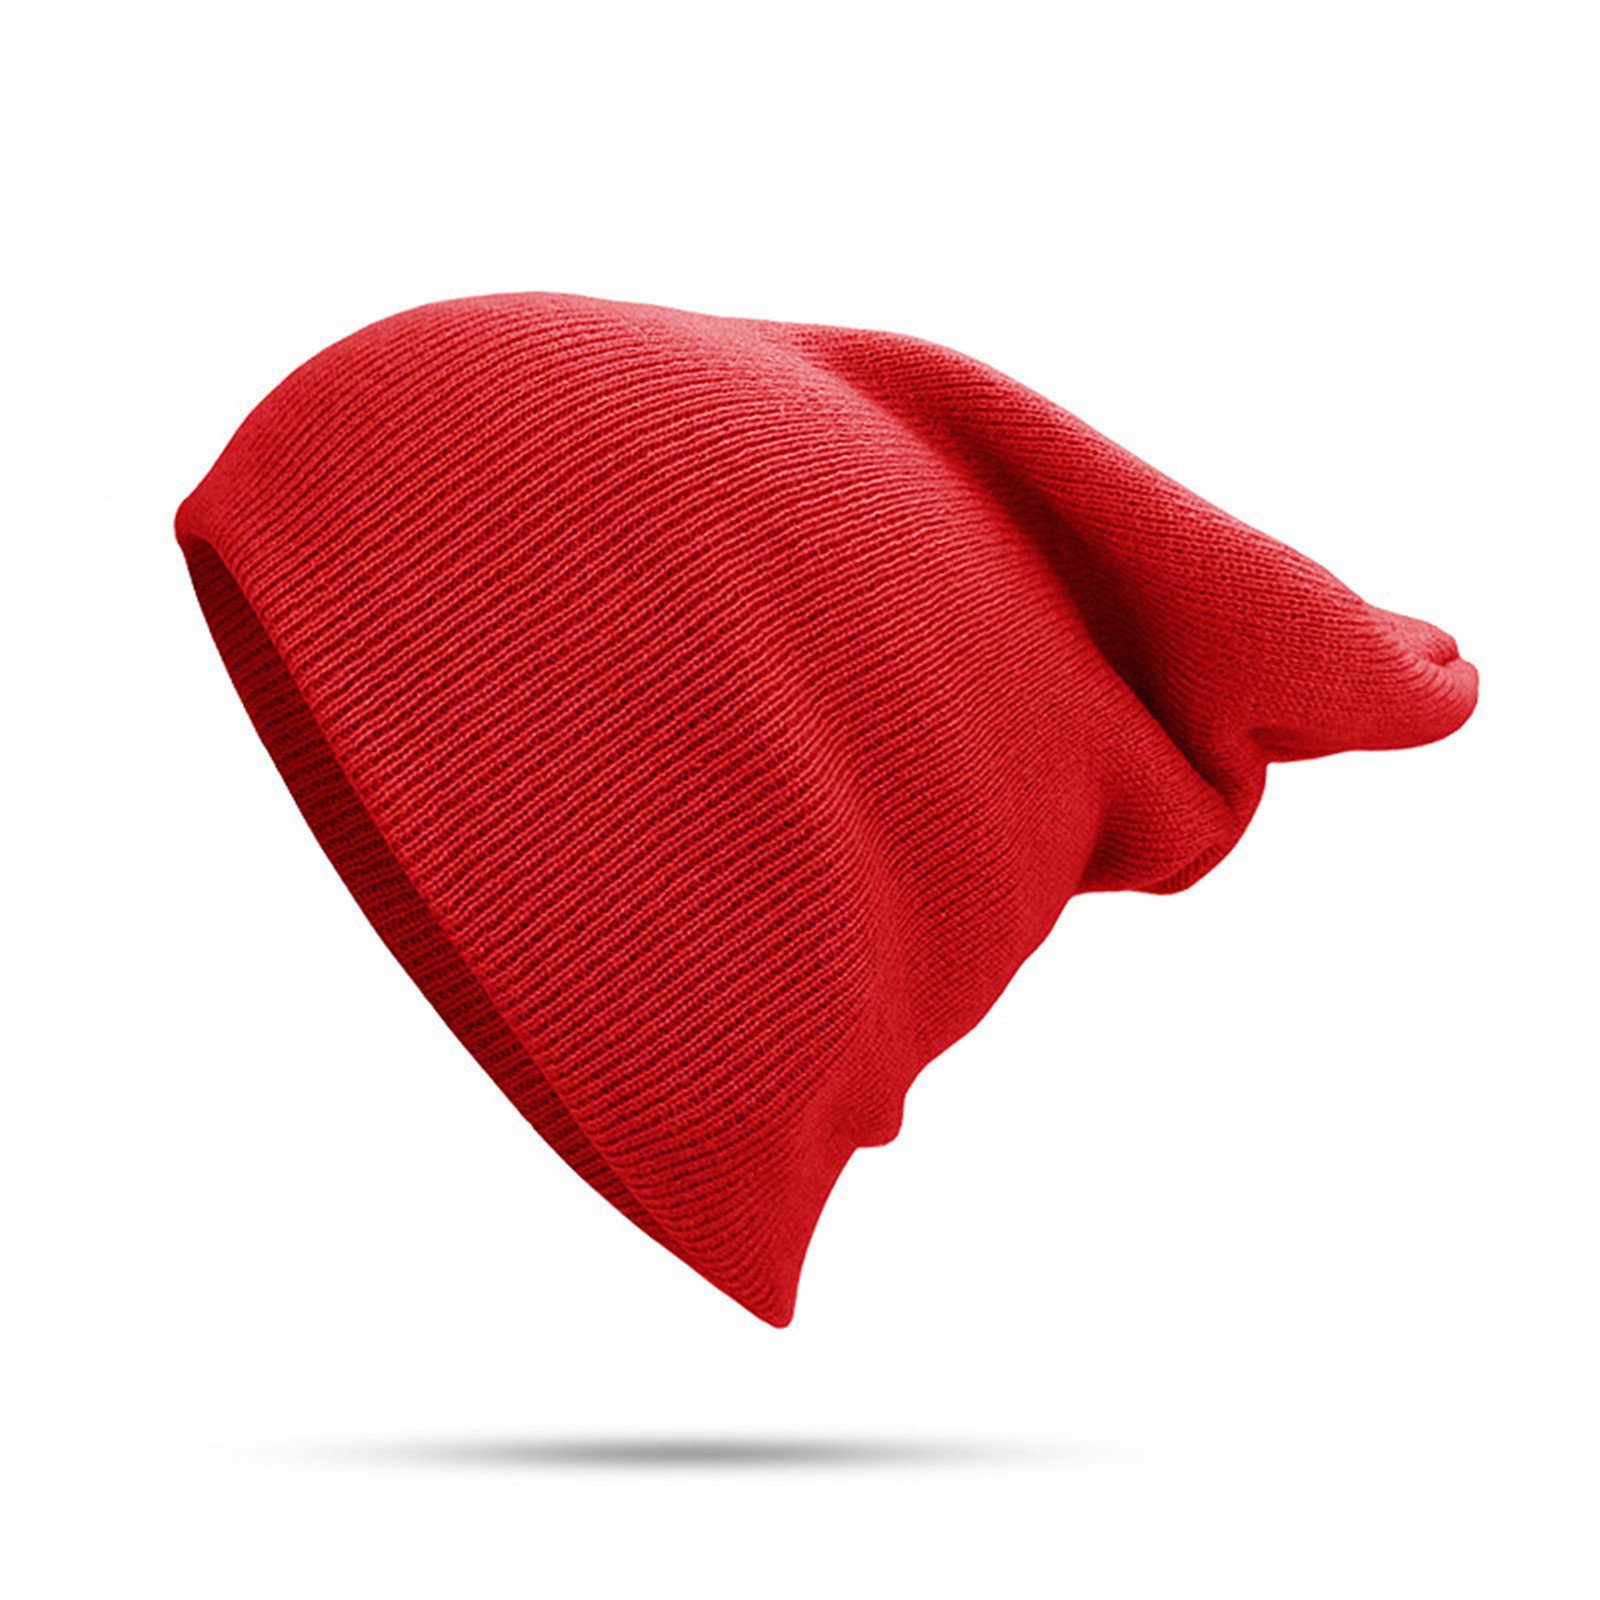 Blusmart Strickmütze Mütze Für Damen Einfarbig, rosarot Und Warm Unisex, Bündchen, Herren, Mit